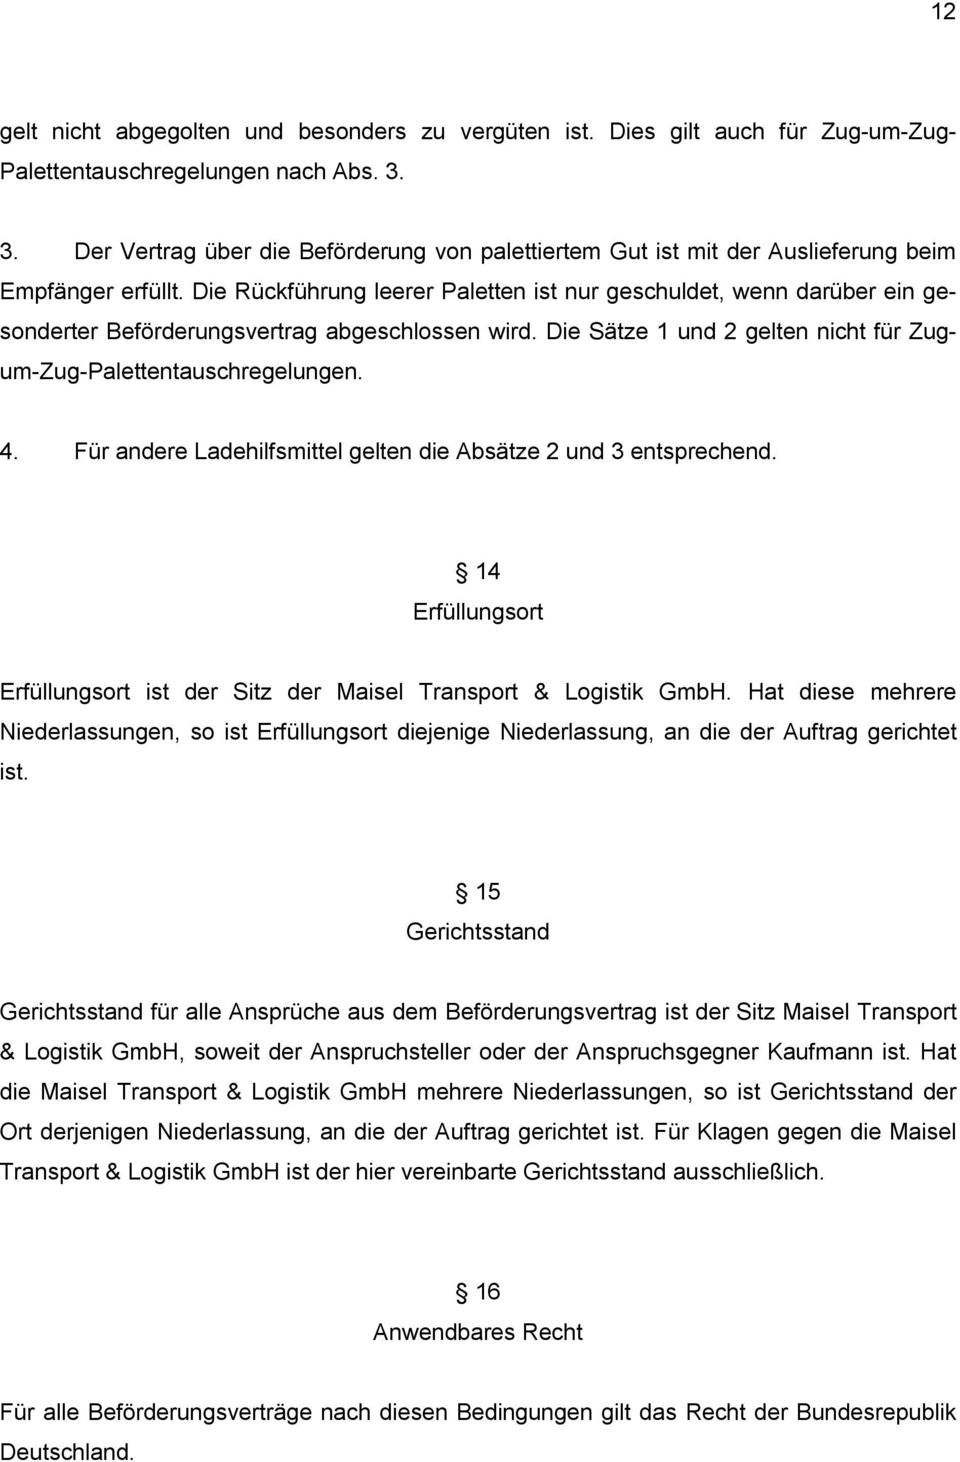 Die Rückführung leerer Paletten ist nur geschuldet, wenn darüber ein gesonderter Beförderungsvertrag abgeschlossen wird. Die Sätze 1 und 2 gelten nicht für Zugum-Zug-Palettentauschregelungen. 4.